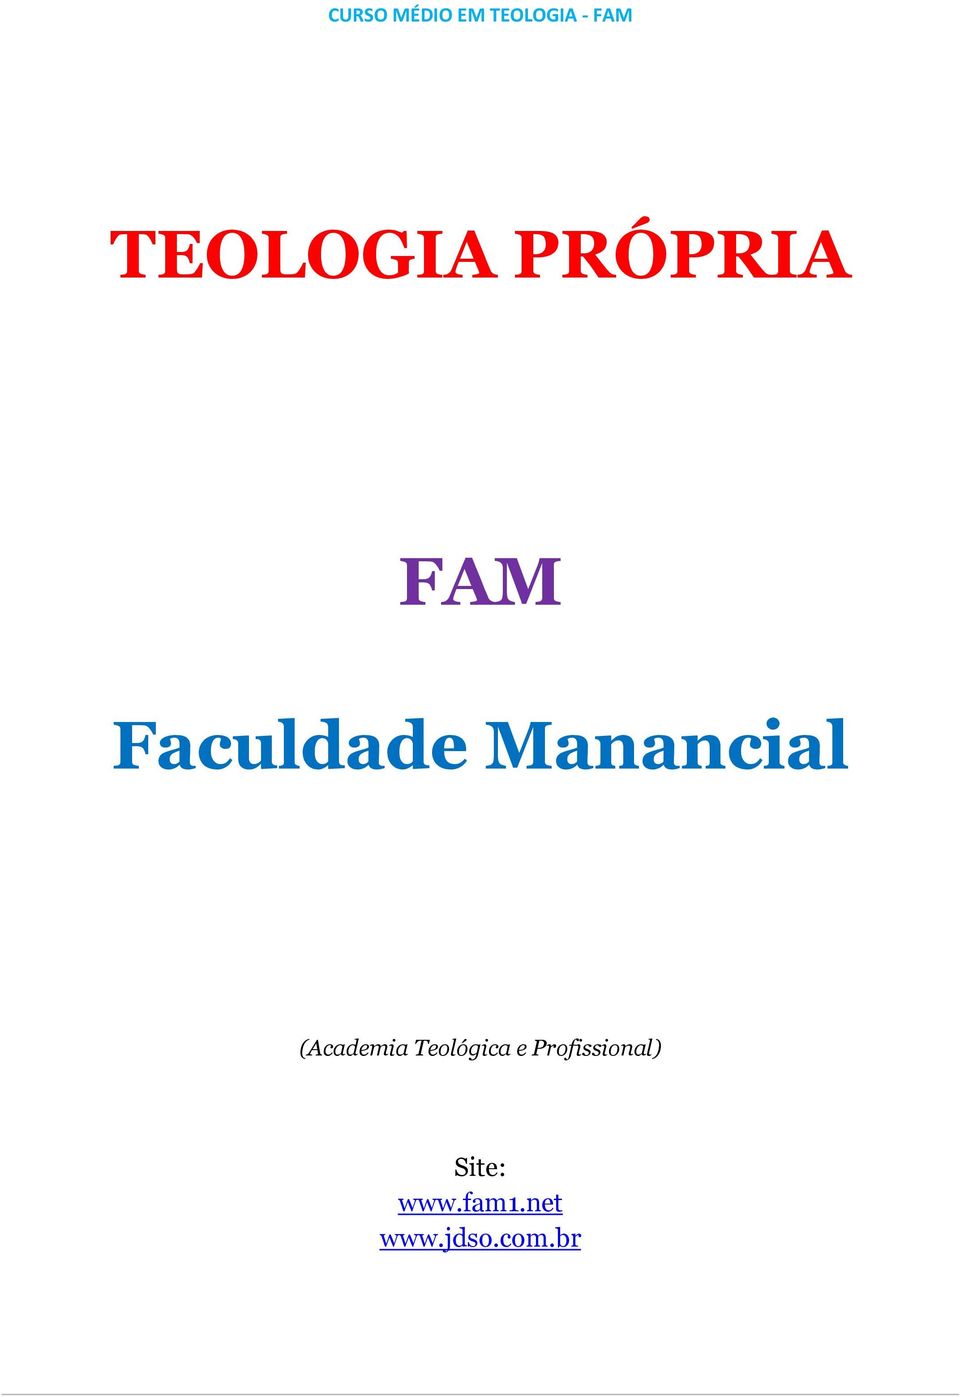 Manancial (Academia Teológica e